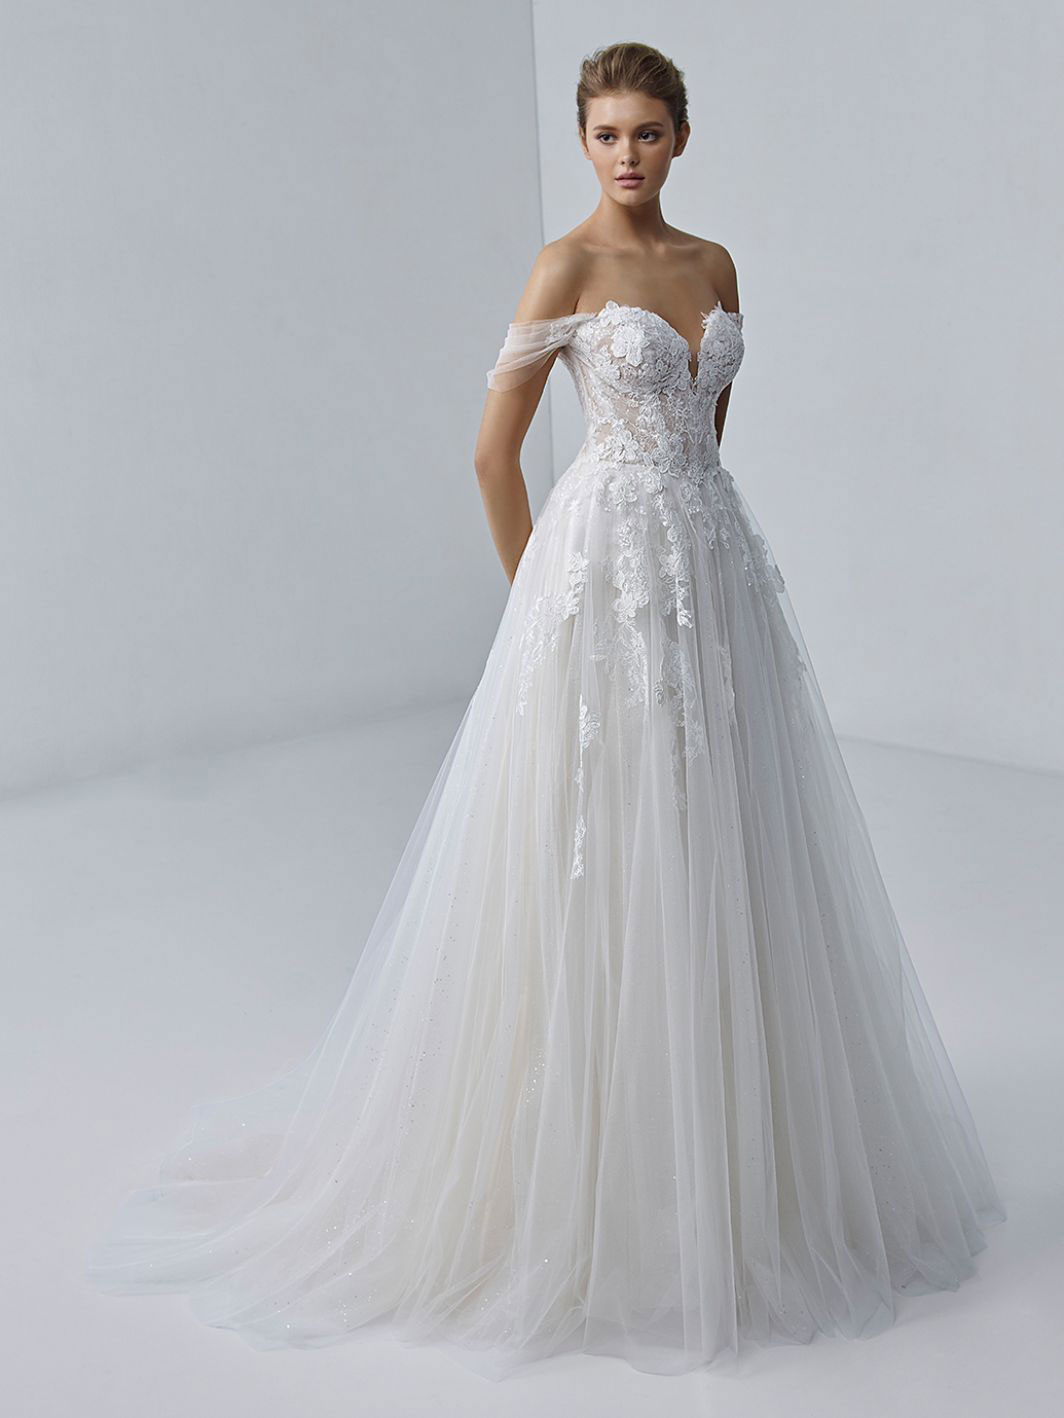 Aurora wedding dress by Elysee